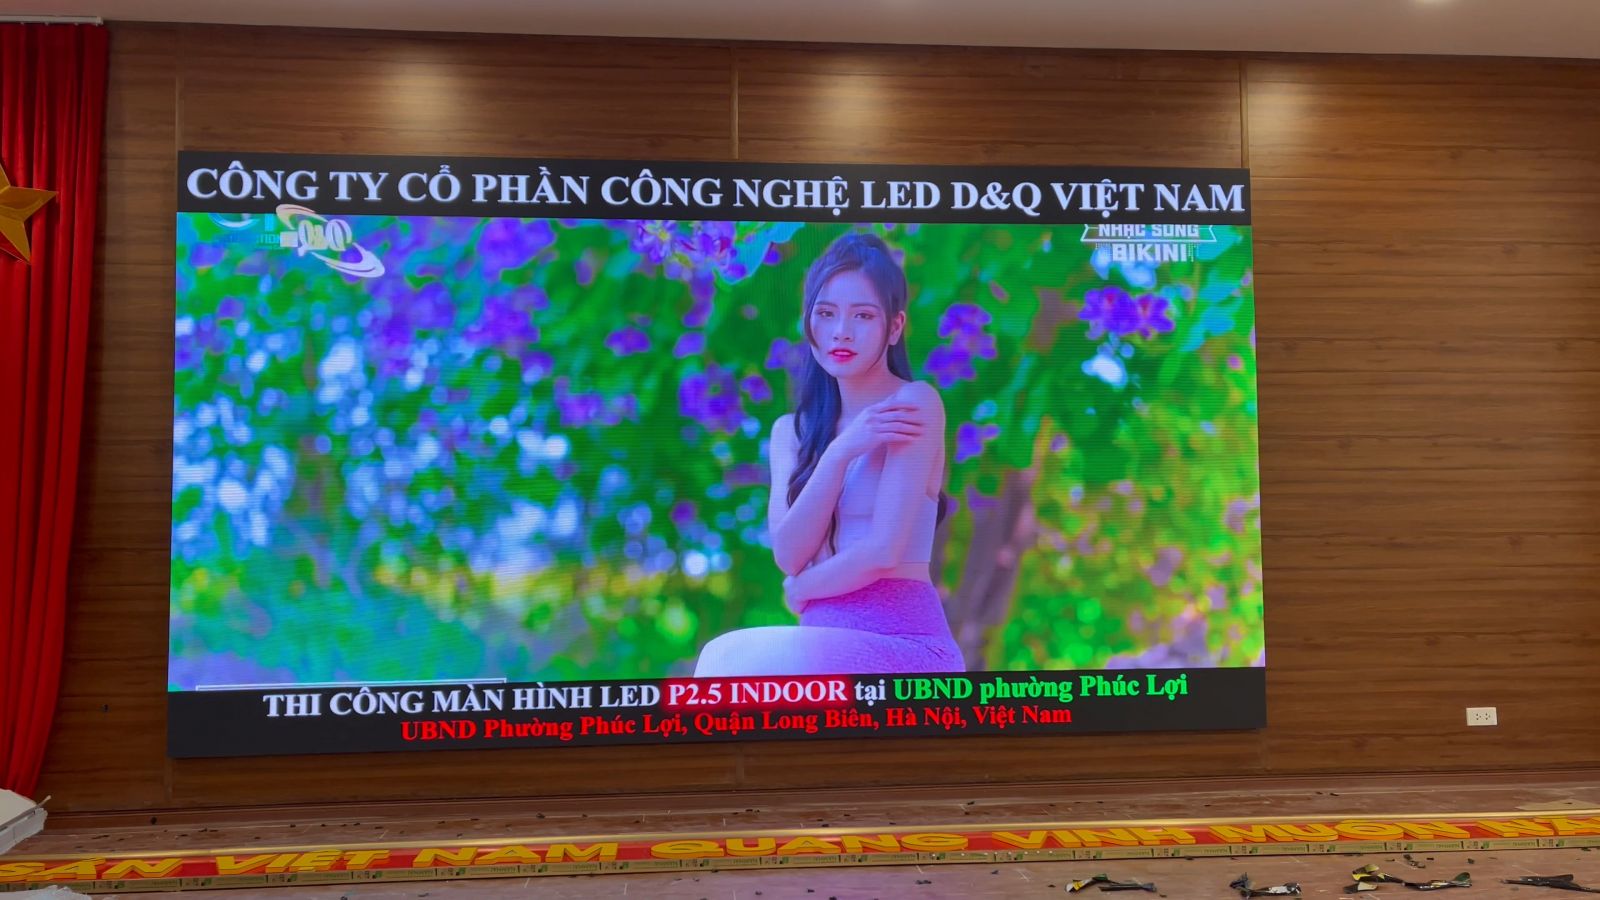 UBND phường Phúc Lợi - Long Biên - HN | Lắm Màn hình LED P2.5 Chất Lượng Cao DQ